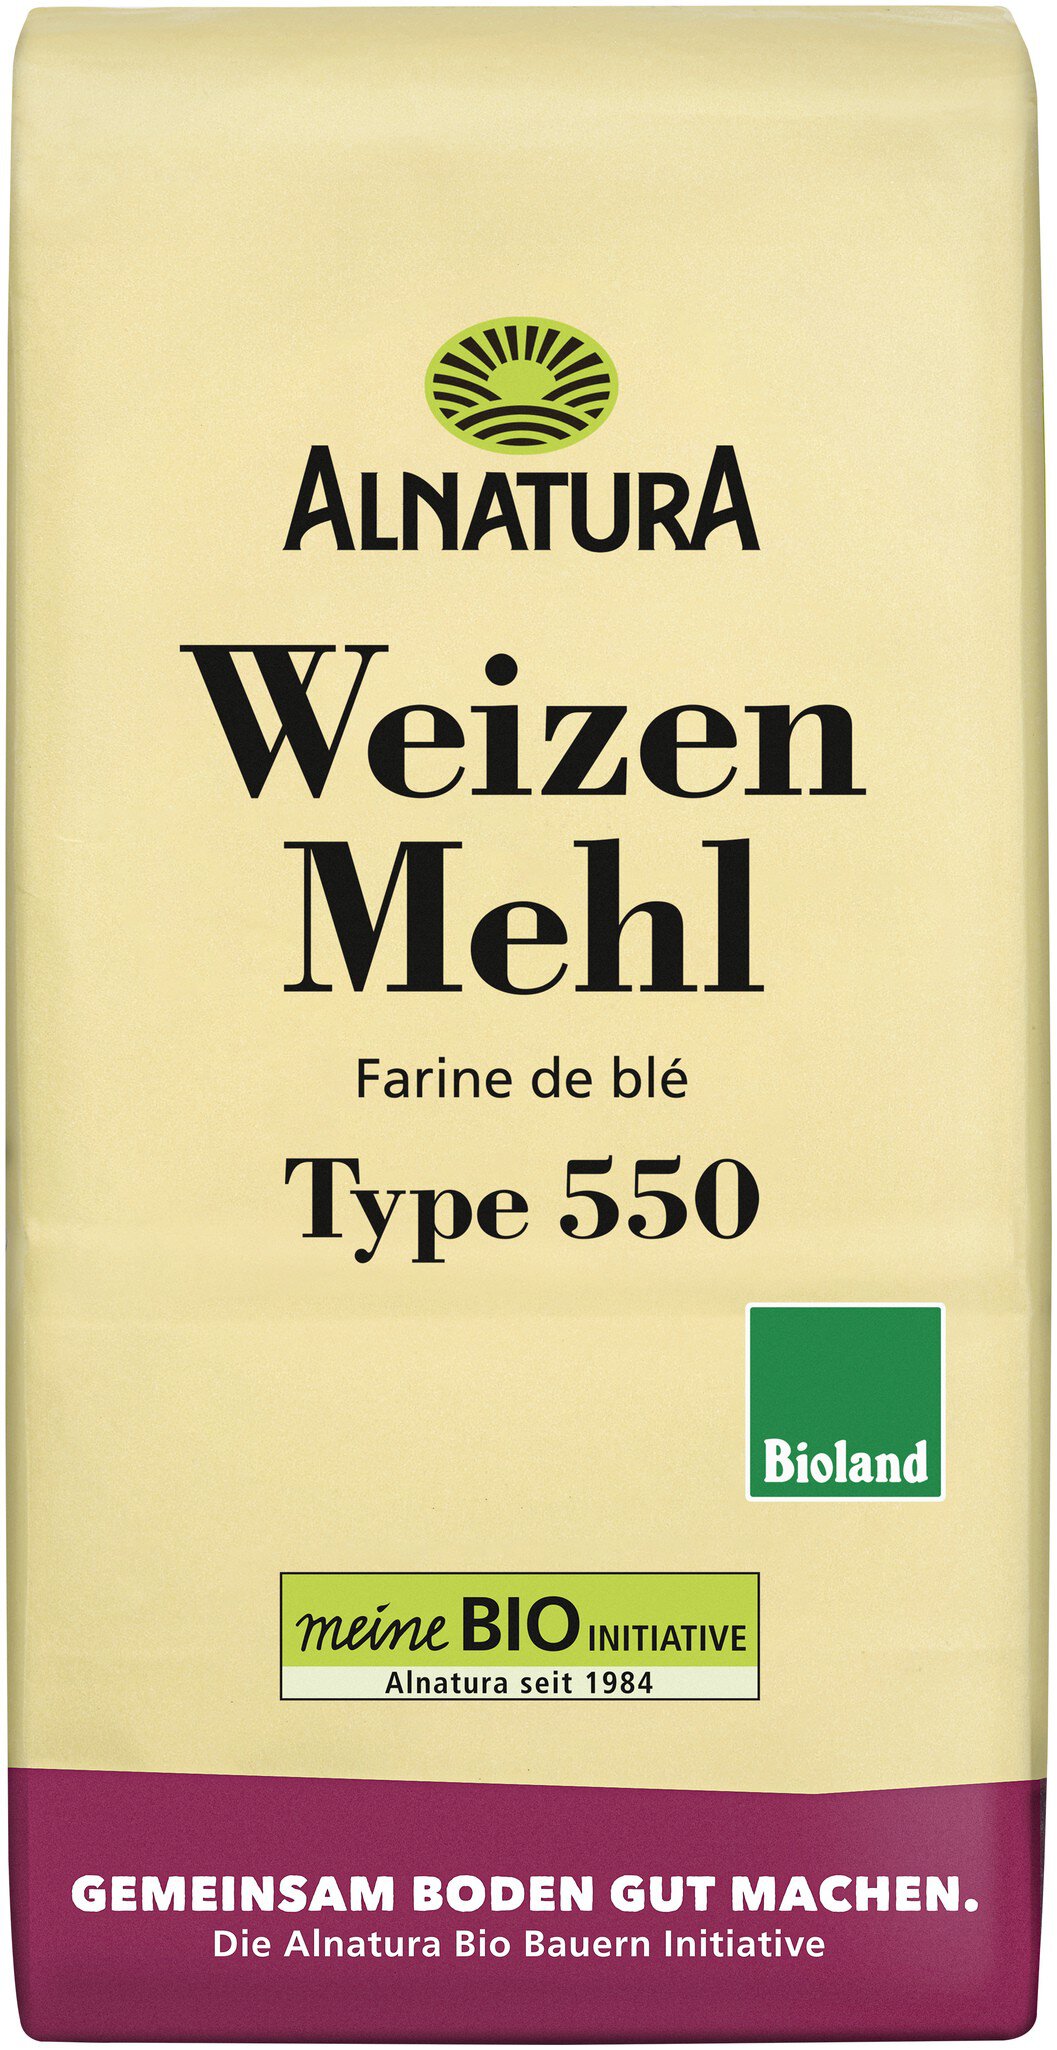 Alnatura Weizenmehl in g) Type Bio-Qualität von 550 (1000